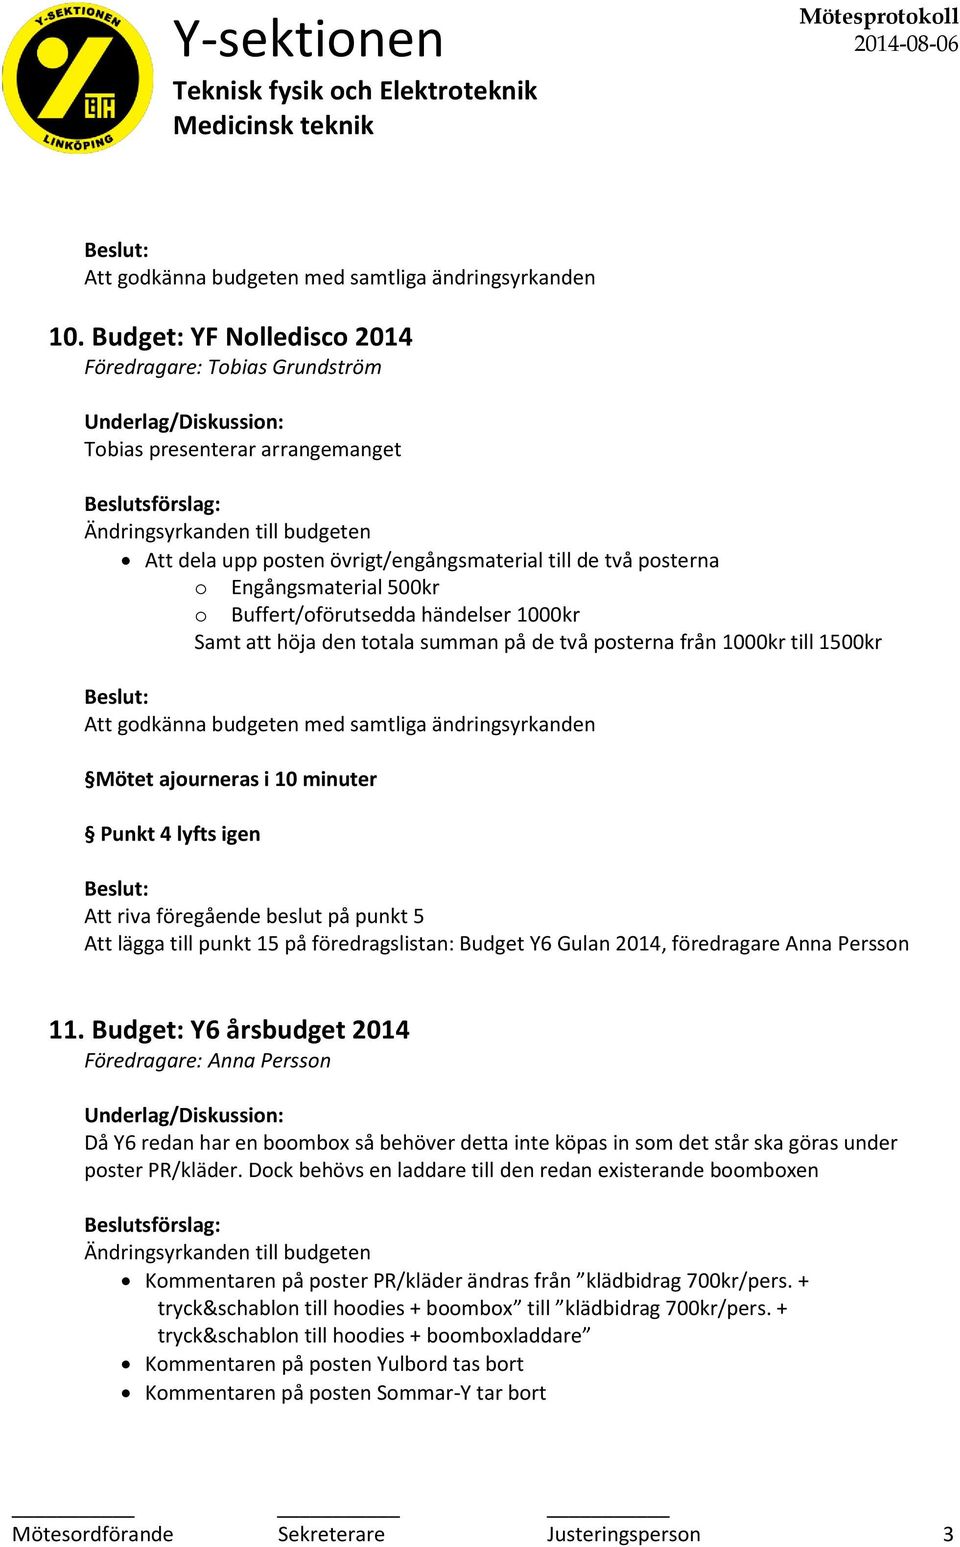 Att lägga till punkt 15 på föredragslistan: Budget Y6 Gulan 2014, föredragare Anna Persson 11.